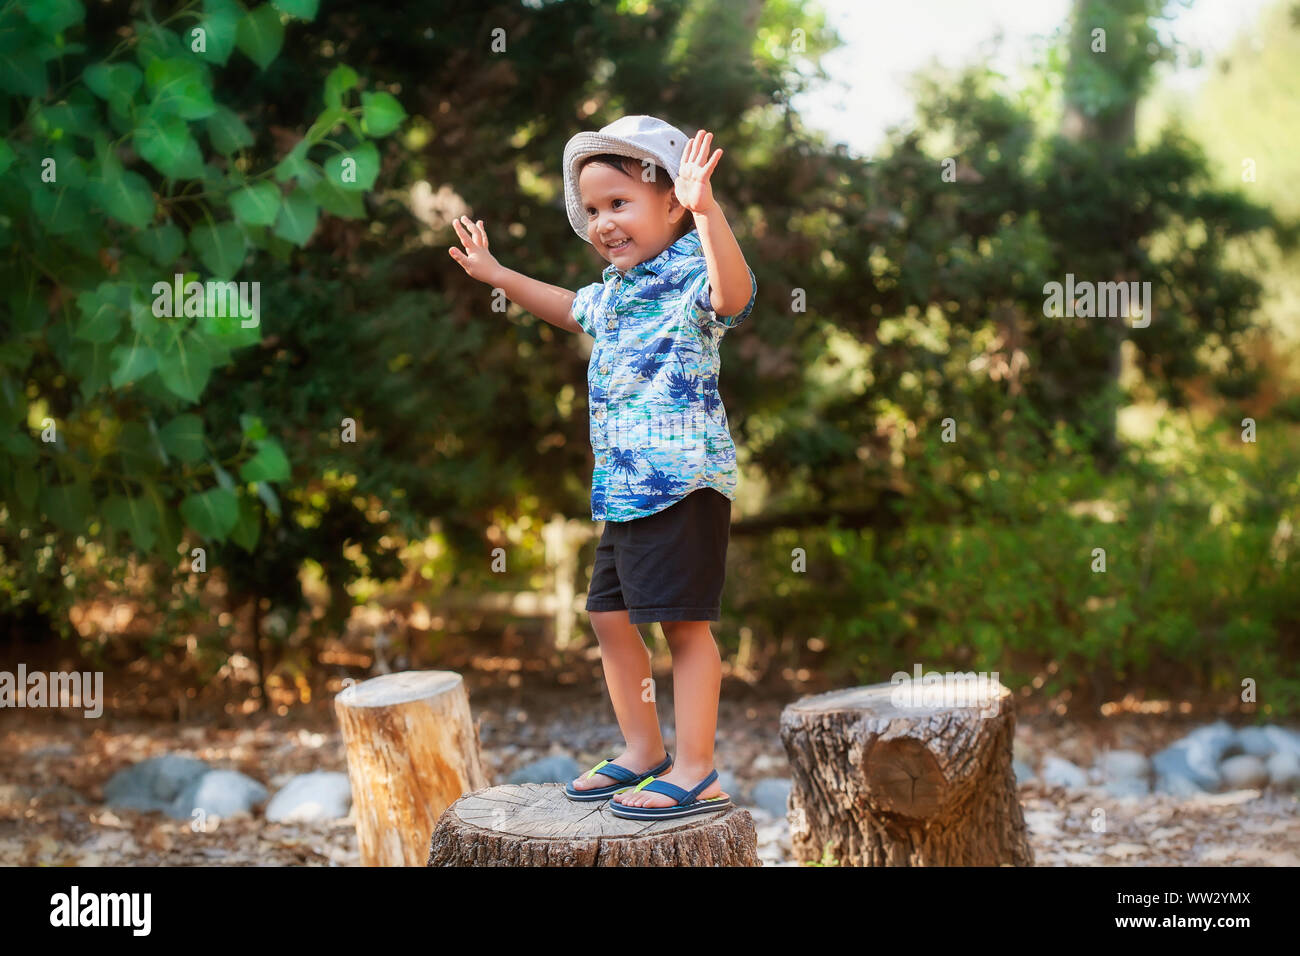 Ein Lächeln 3 Jahre alten Jungen in einer freien, stand auf einem hölzernen, mit den Armen ausgestreckt, Balance. Stockfoto